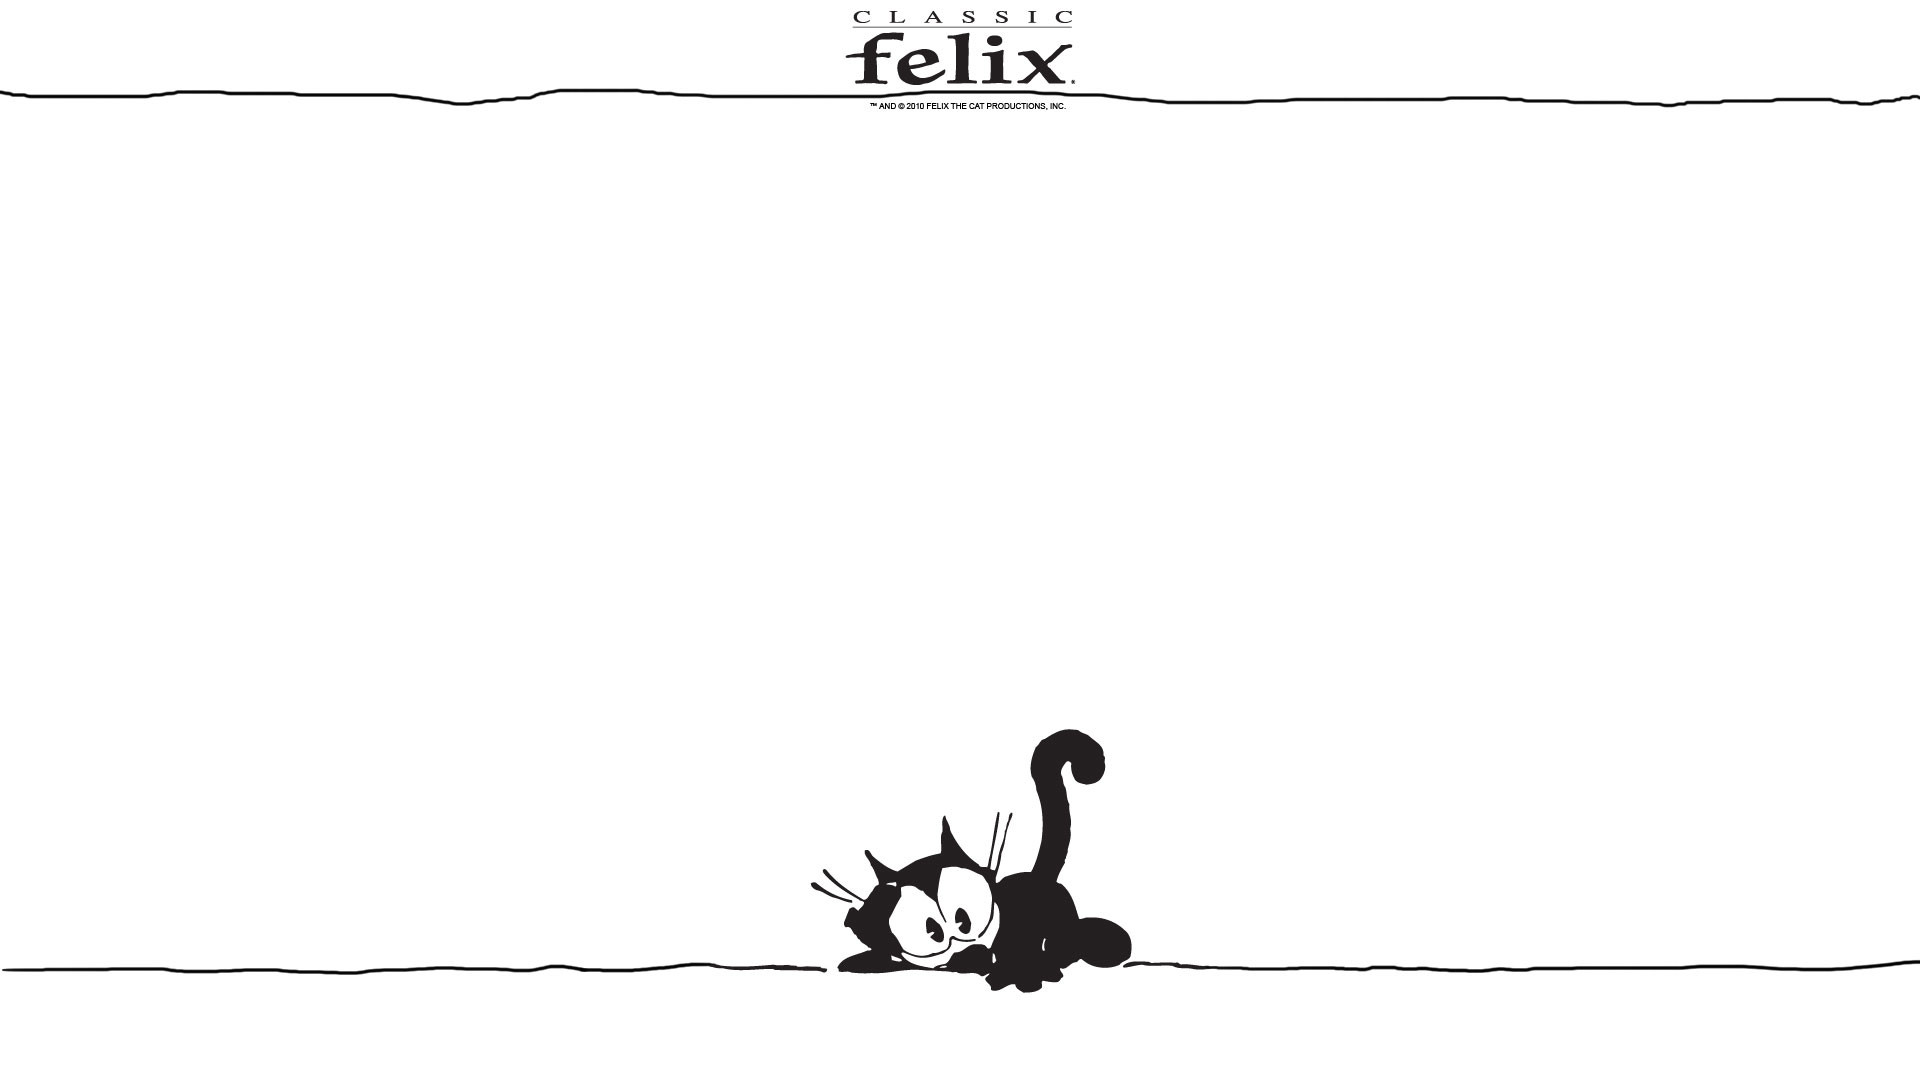 Felix the Cat Wallpapers ·① WallpaperTag